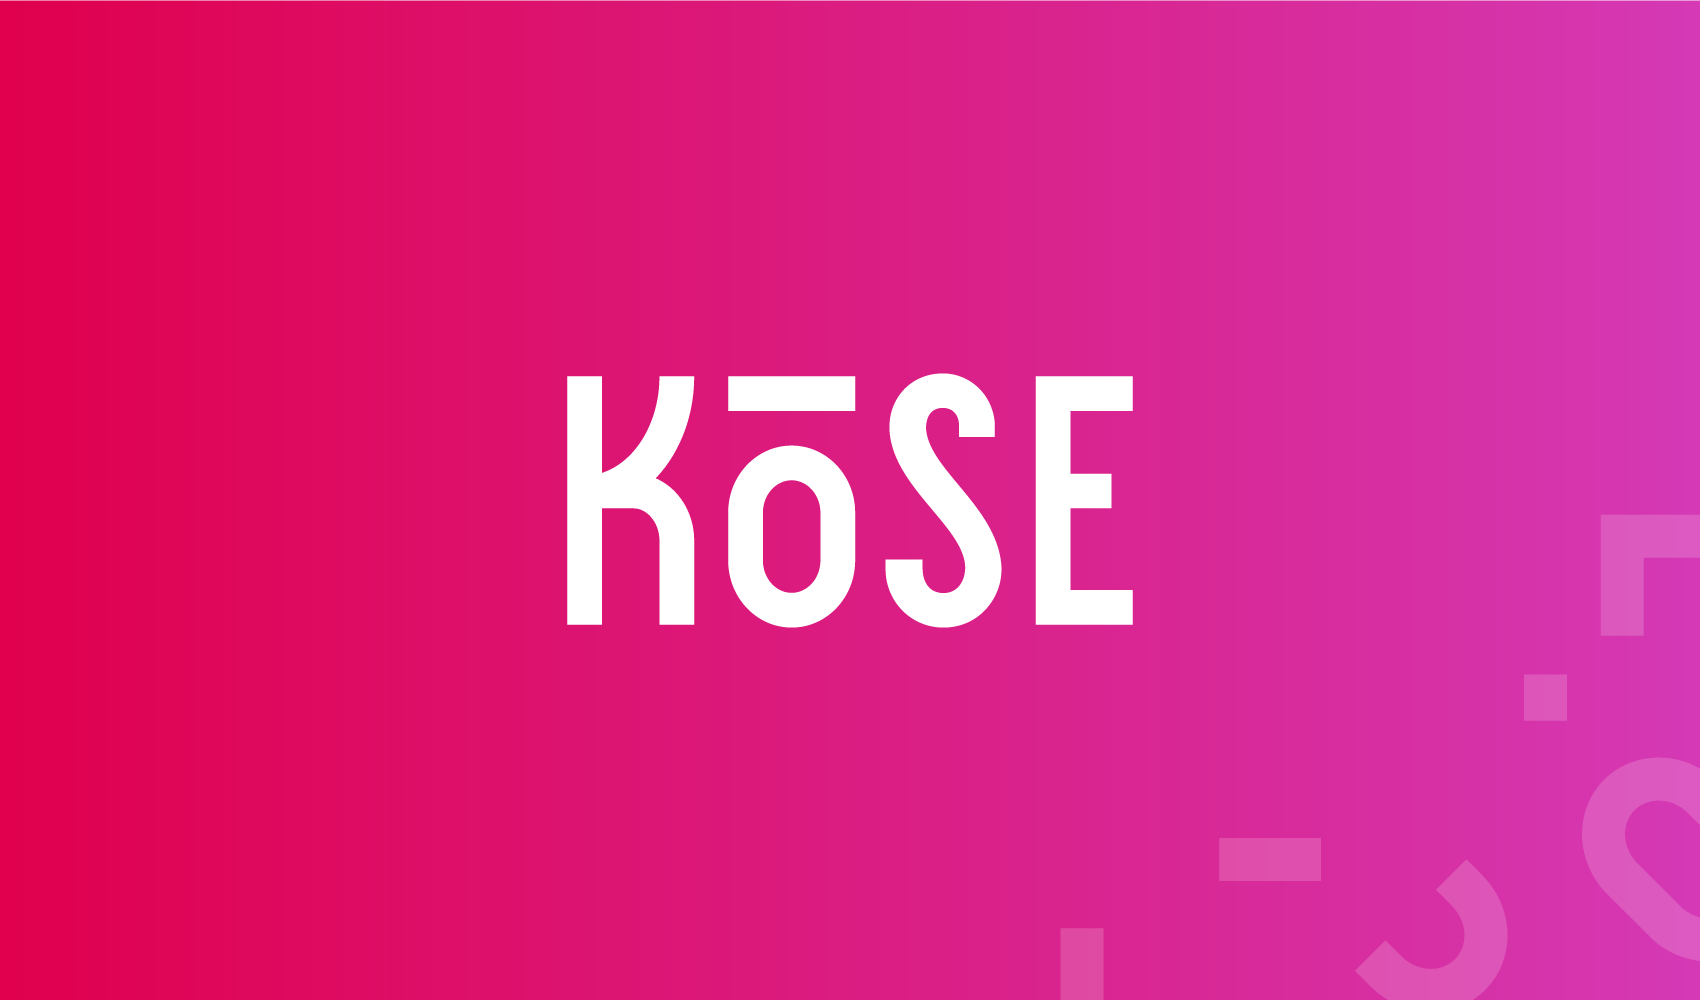 Kose Logo - Kose Logo & Identity Design